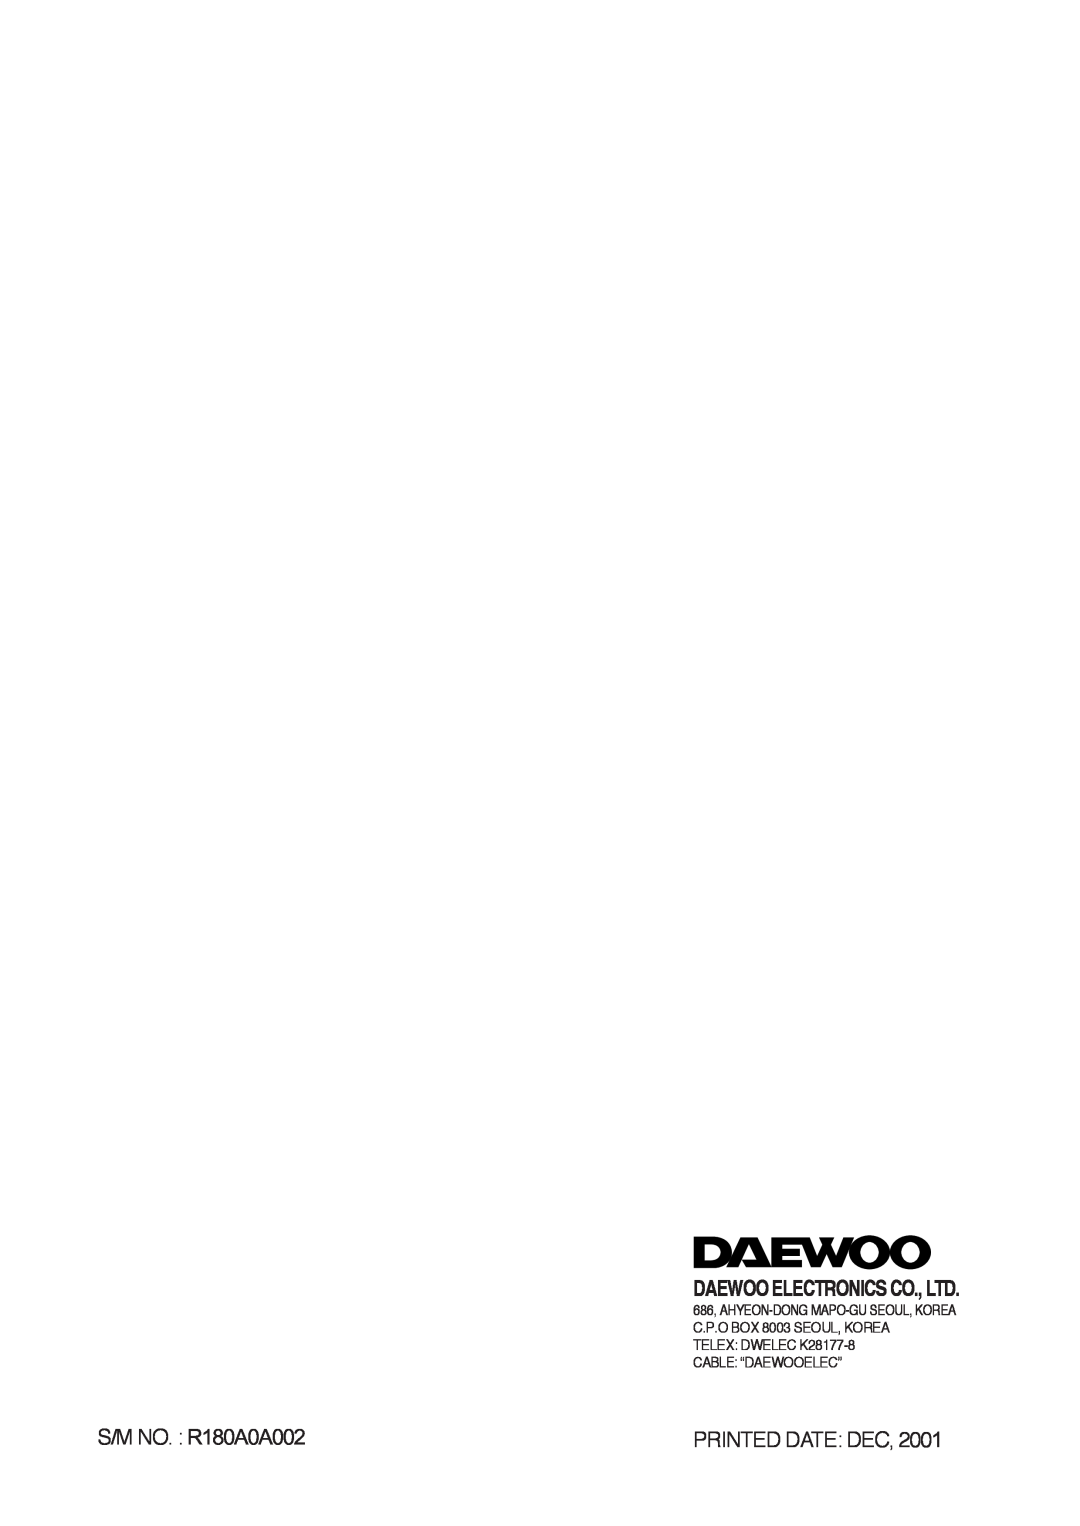 Daewoo 181GOA0A manual S/M NO. R180A0A002, Printed Date Dec 